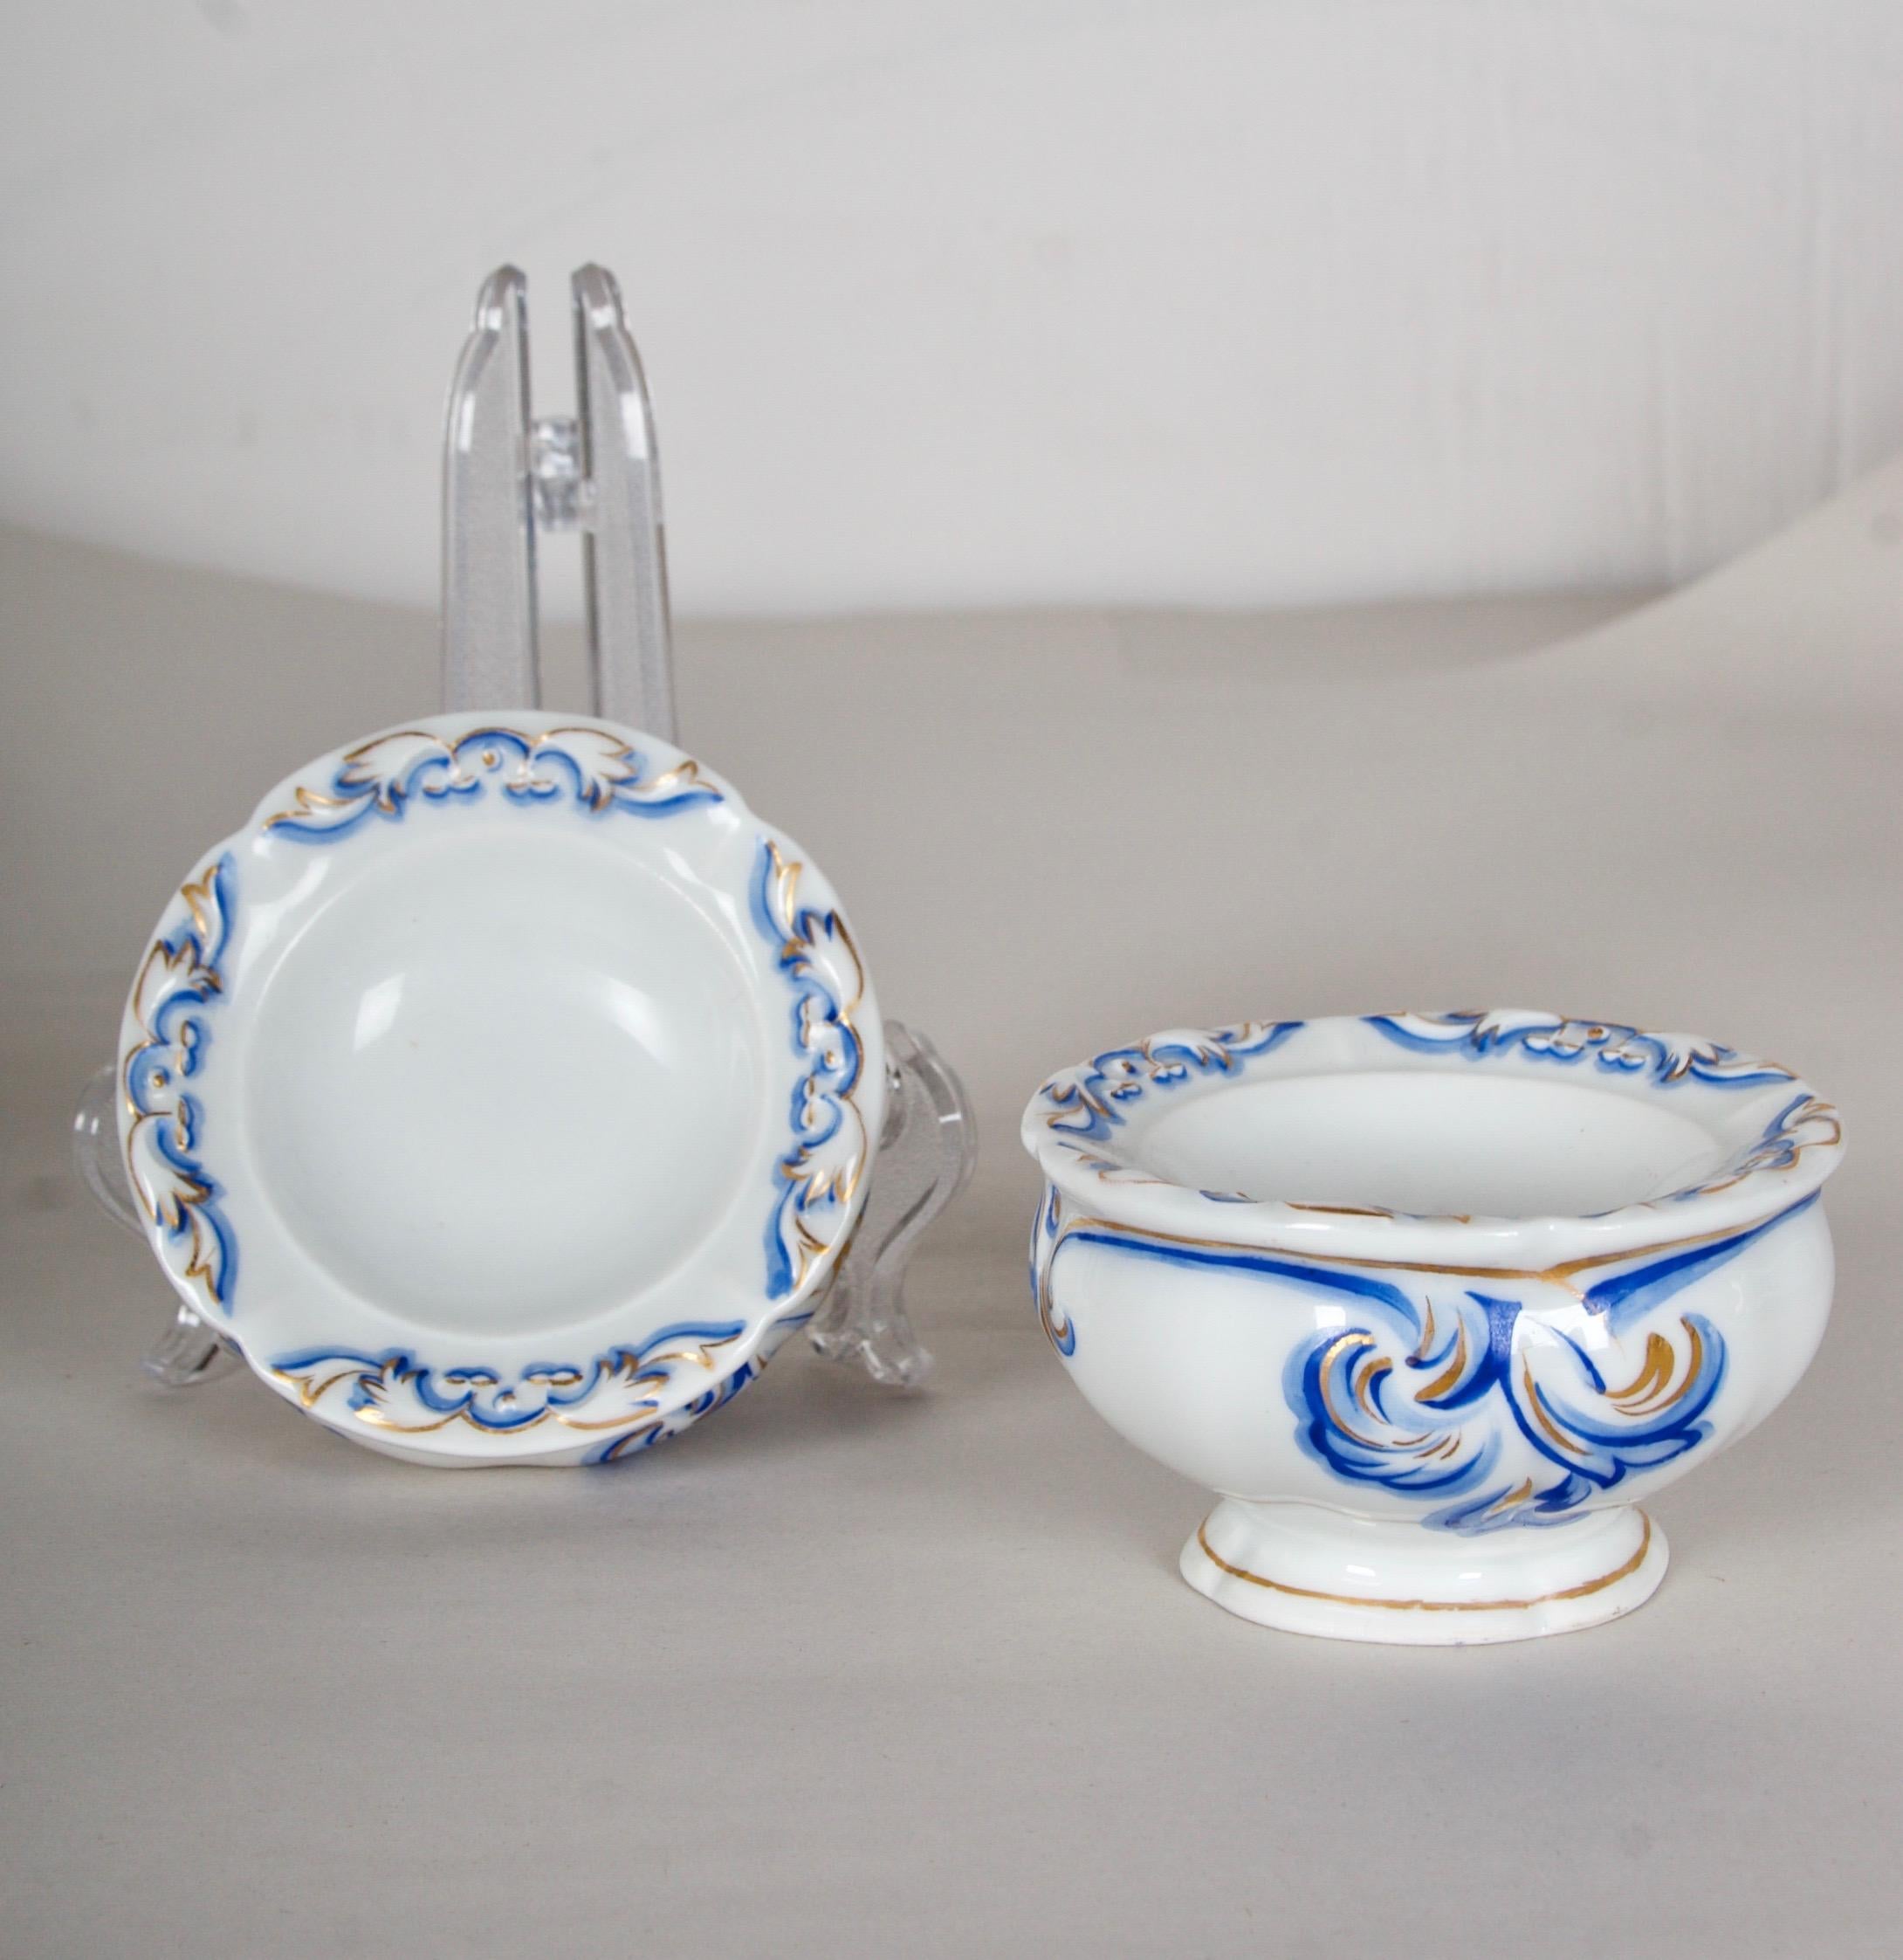 Autrichien 1851 Imperial Vienna Porcelain 27 piece Service for 18, very rare en vente